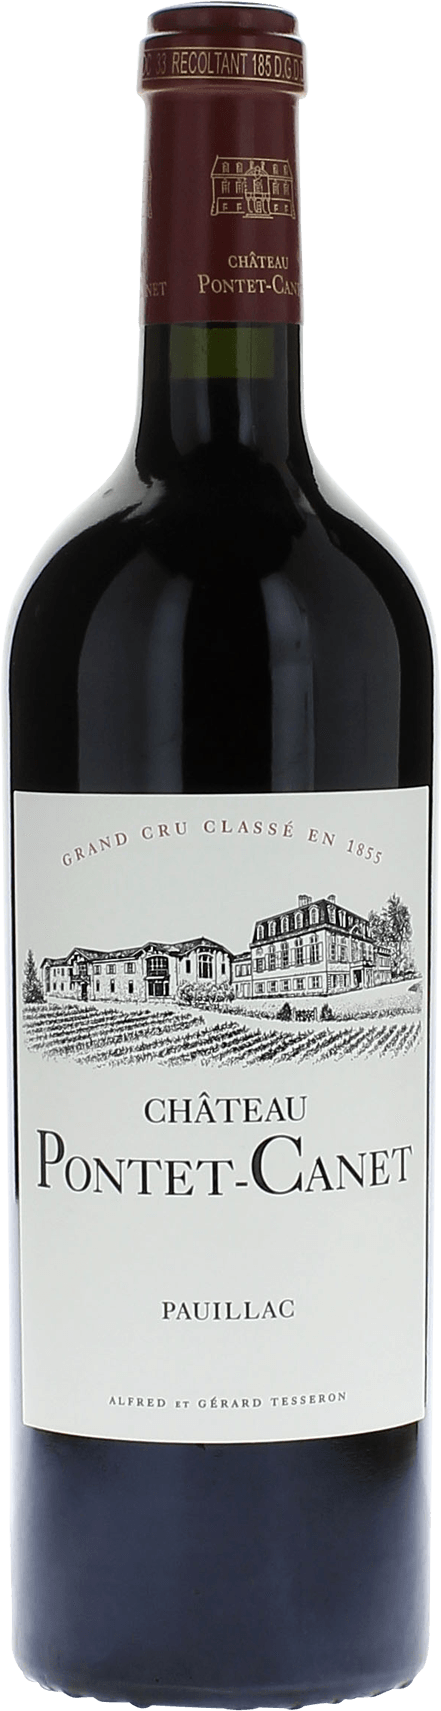 Pontet canet pauillac 2019 5me Grand cru class Pauillac, Bordeaux rouge